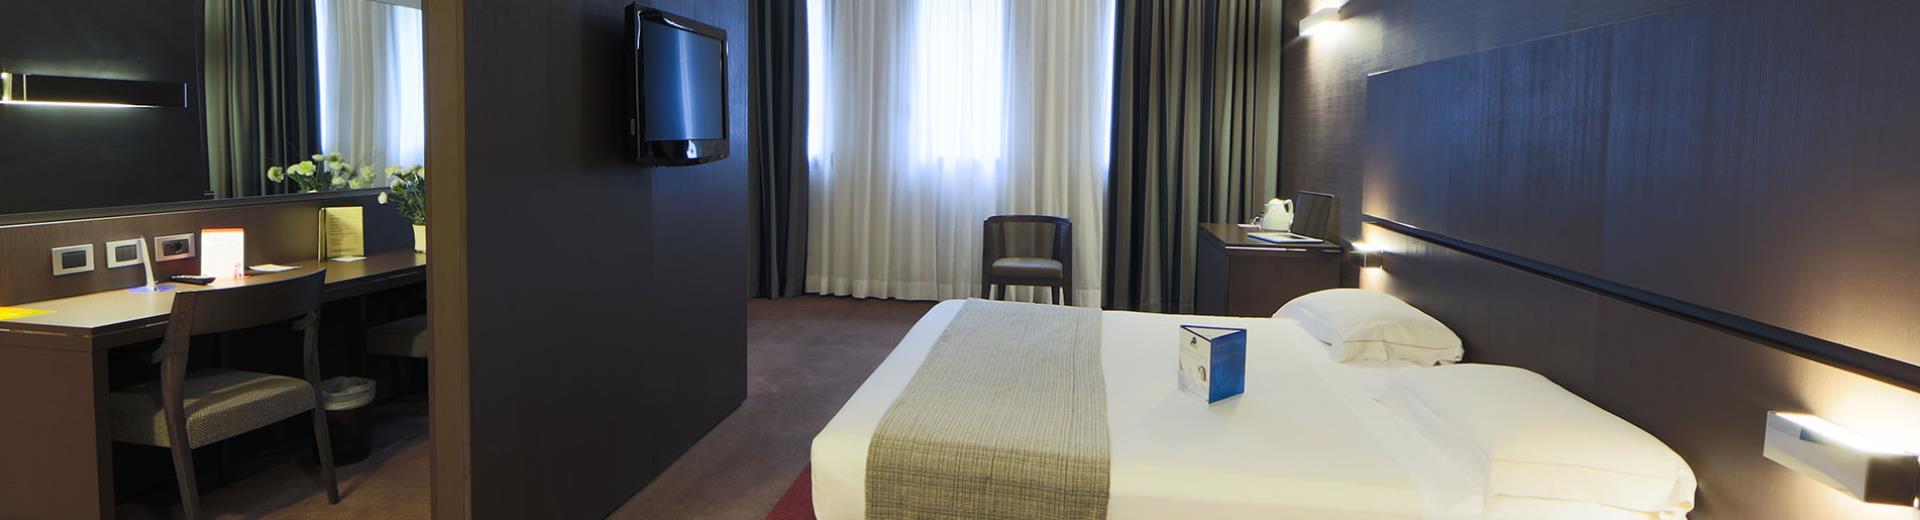 Scopri le camere family dotate di ogni comfort del nostro hotel 4 stelle a due passi da Milano.